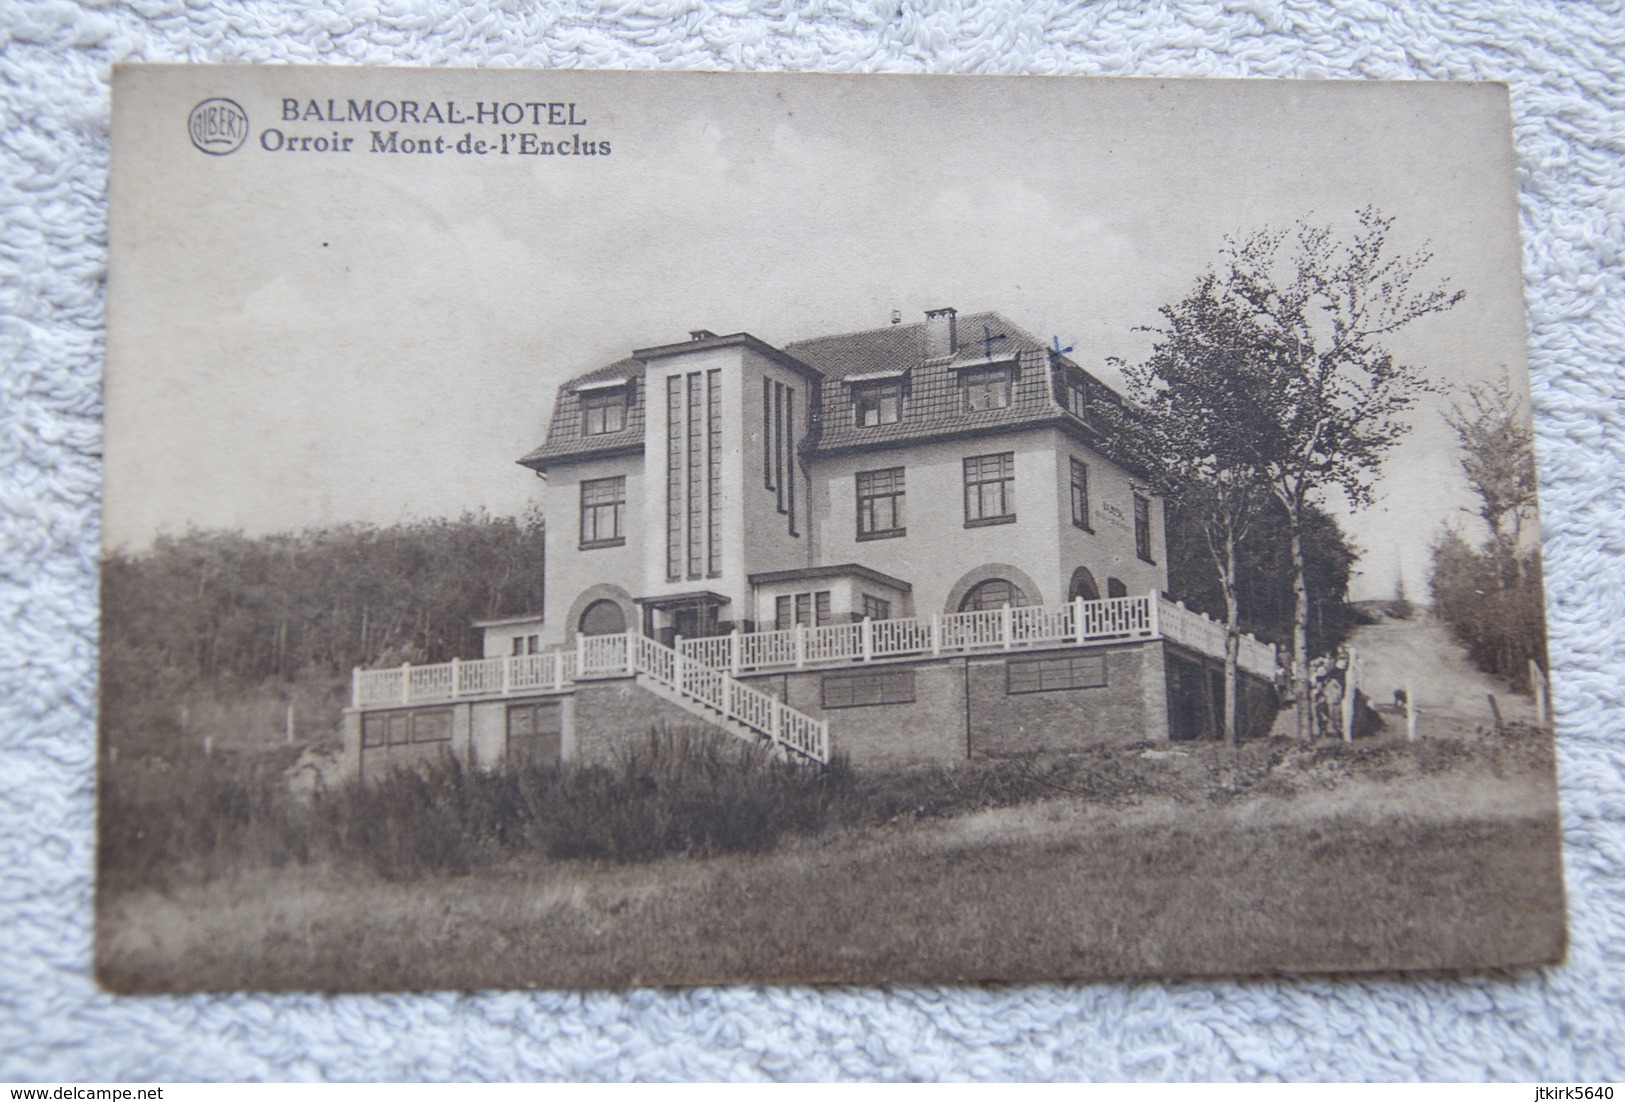 Orroir Mont-de-l'Enclus "Balmoral-hotel" - Kluisbergen